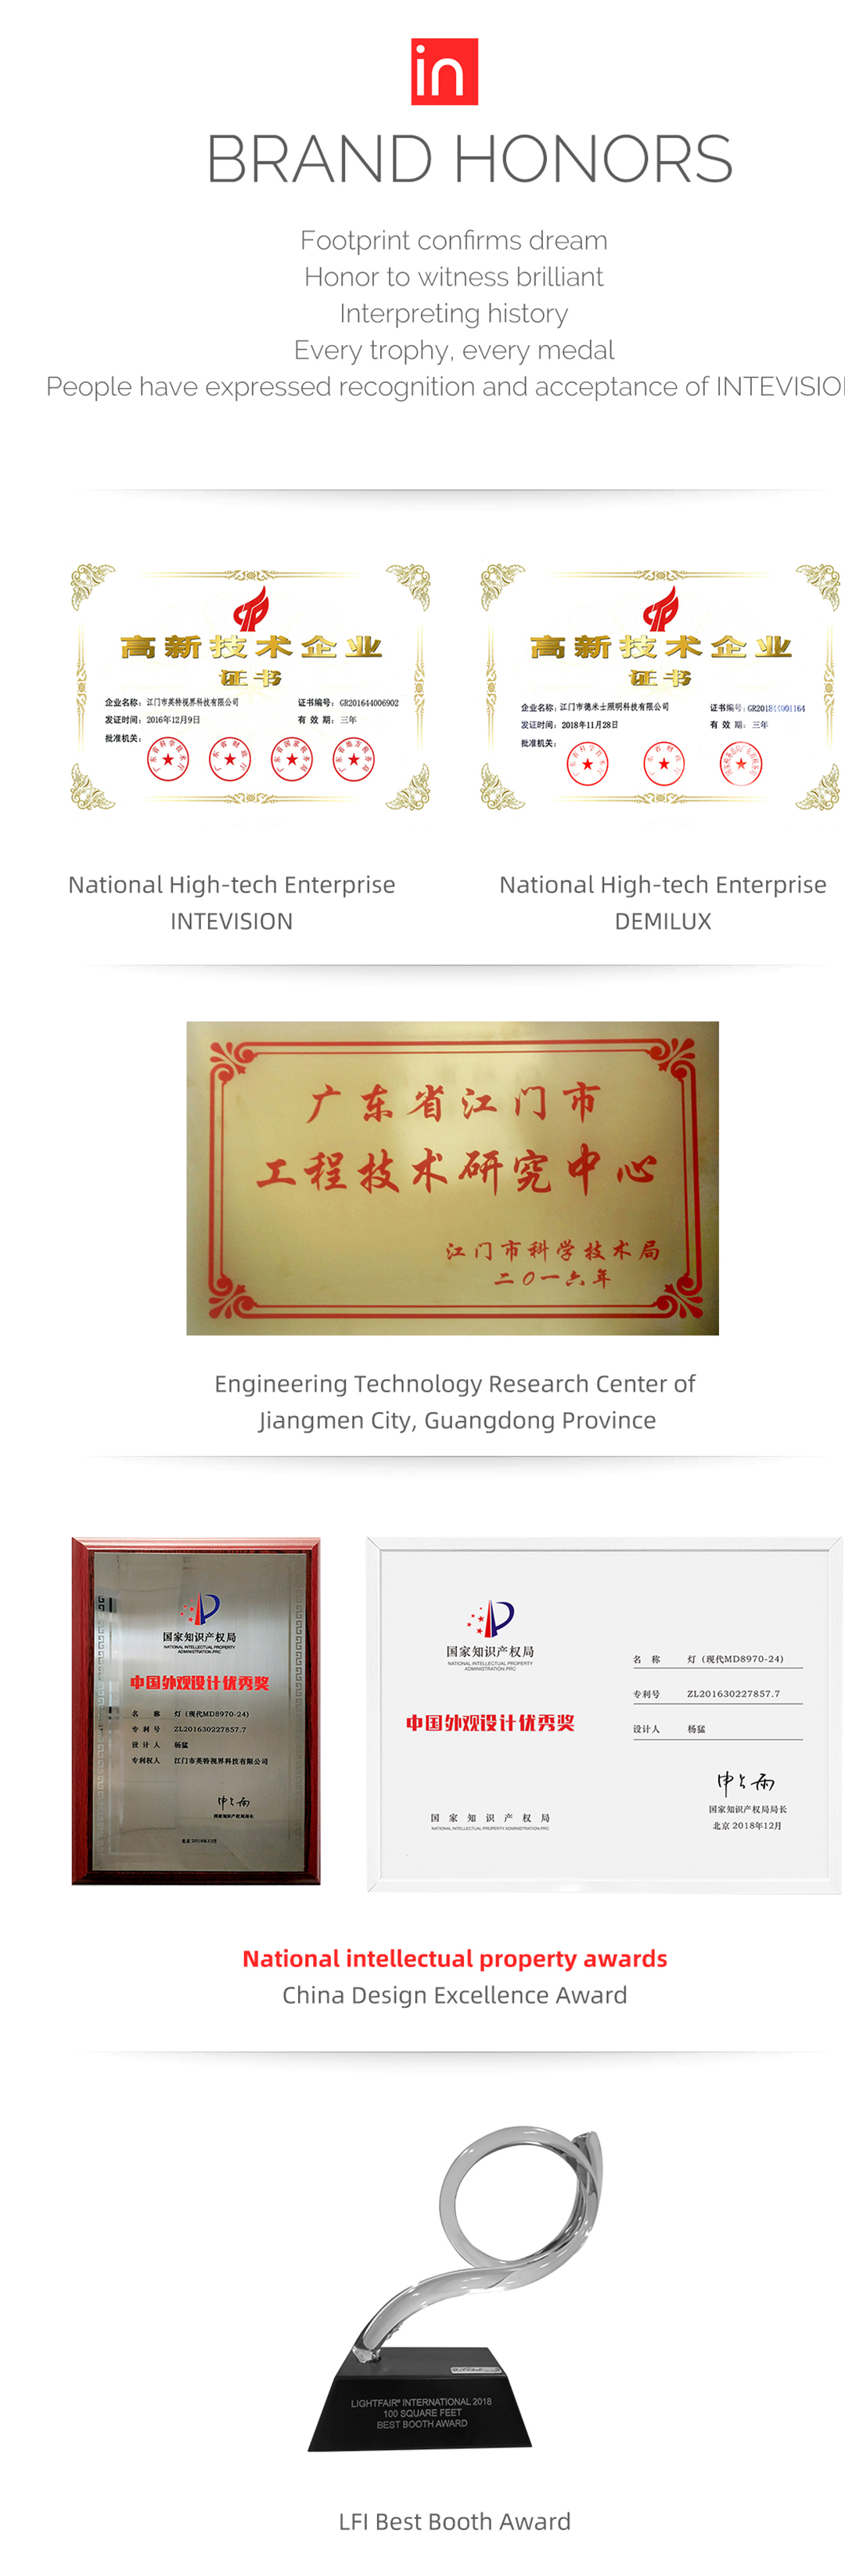 Corporate Honor Demilux Co Ltd Demilux Co Ltd